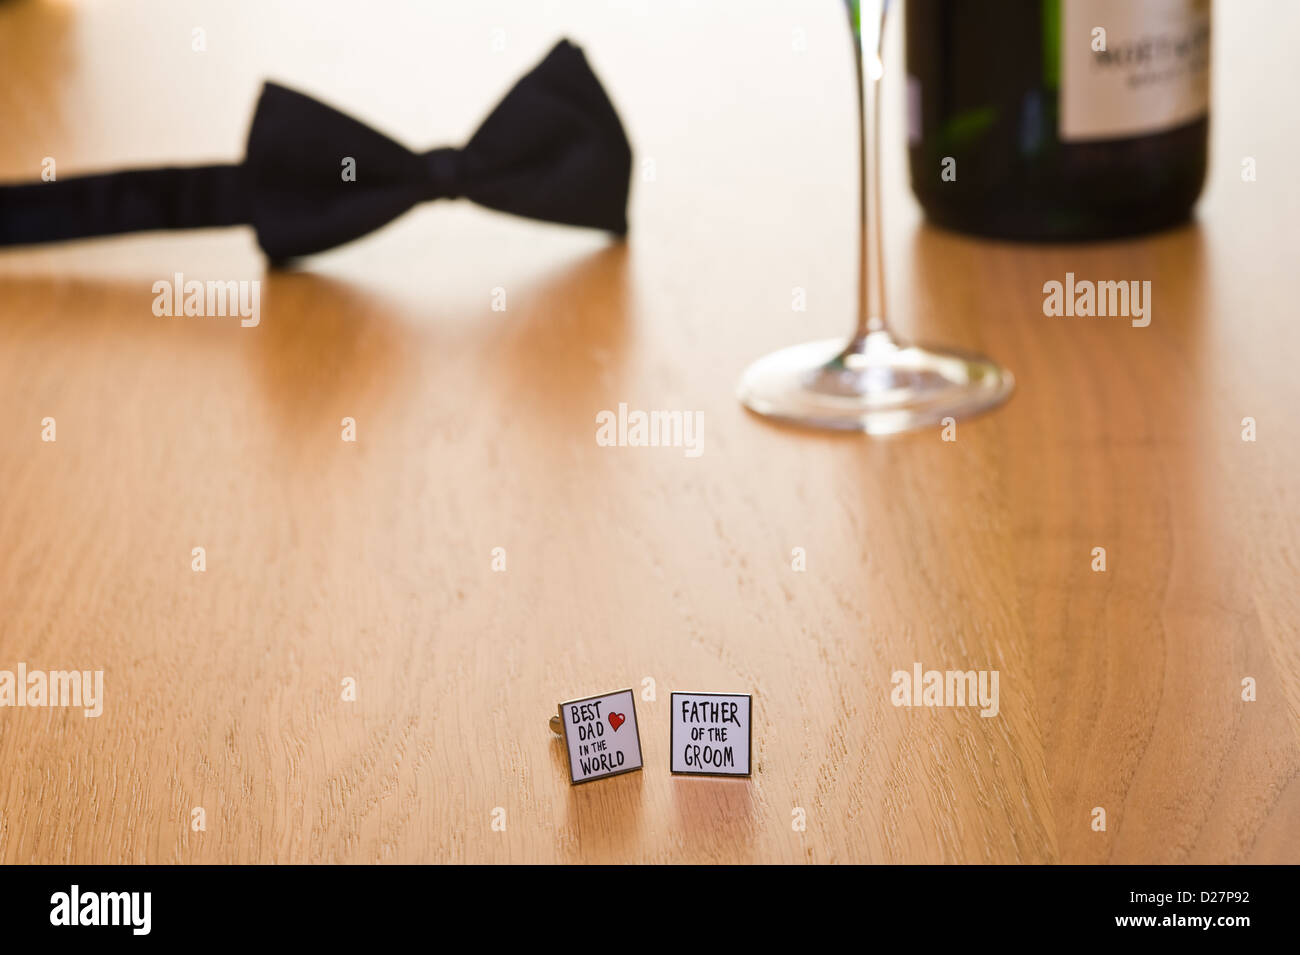 Noeud papillon et les boutons de manchette sur une table avec une bouteille de verre et blade 2. Banque D'Images